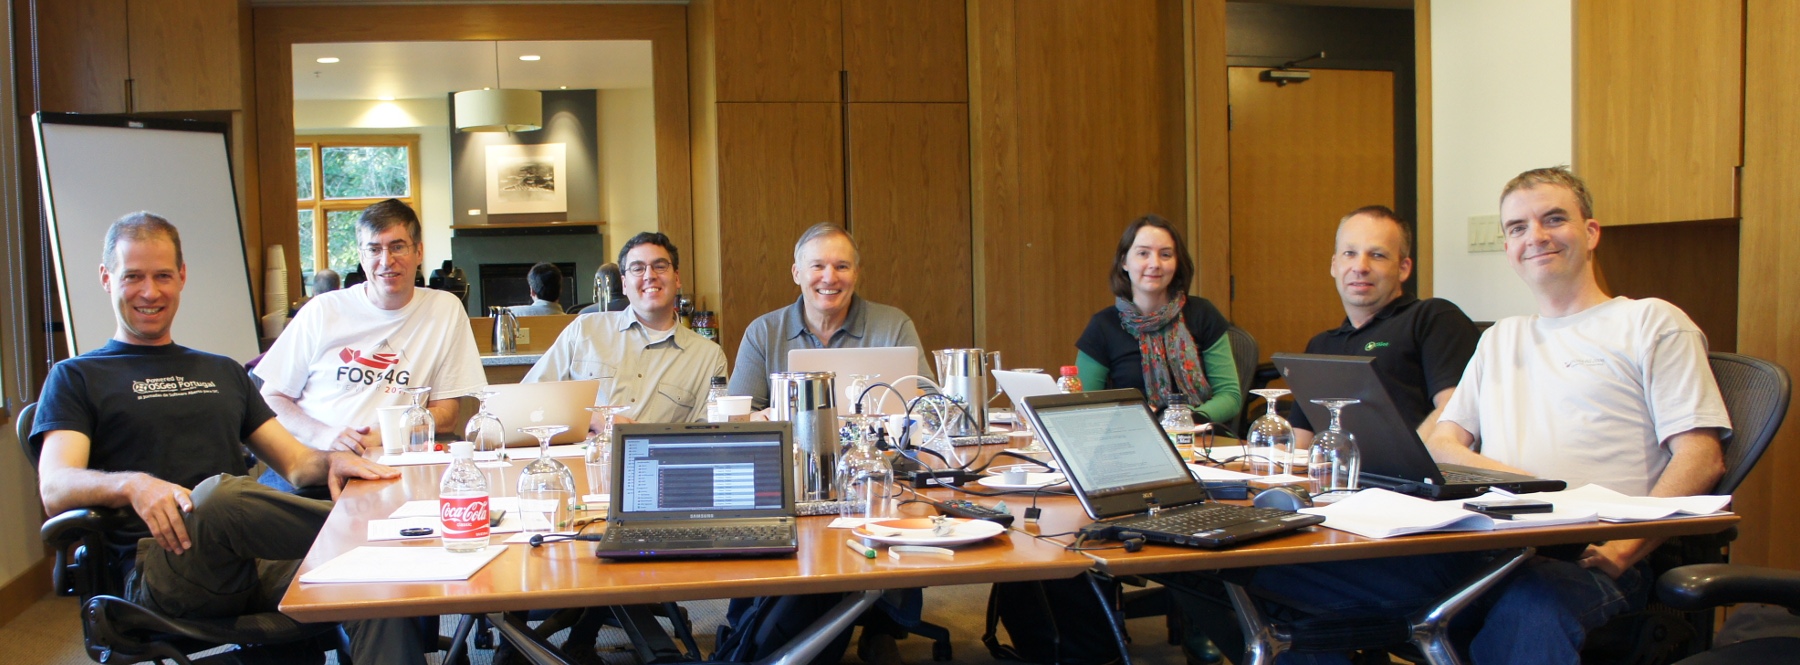 Board-of-directors seattle-meeting-2012.jpg